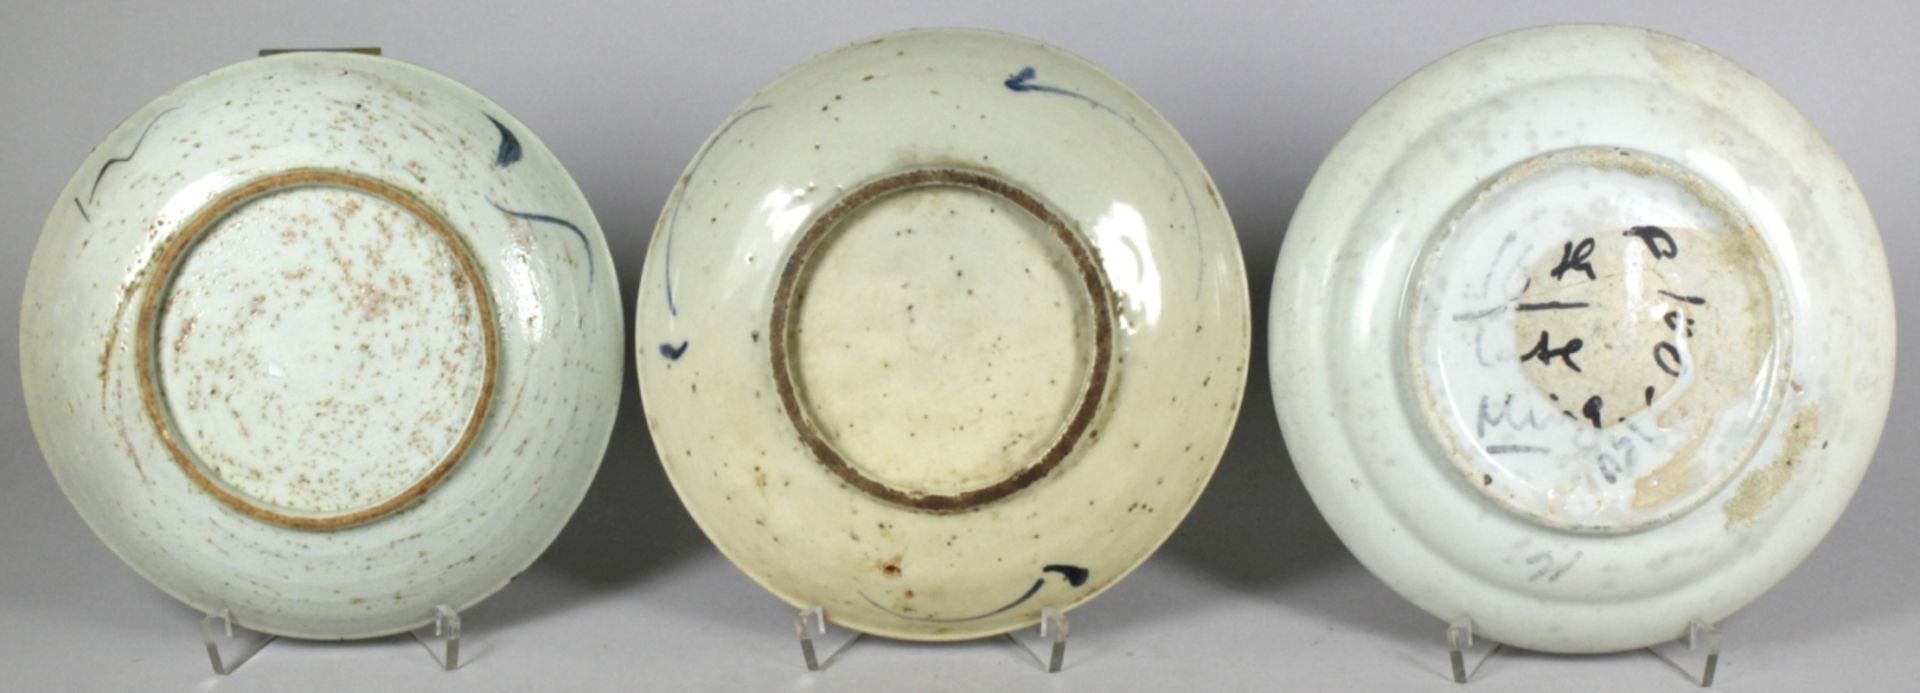 Drei Porzellan-Zierteller, China, Ming-Dynastie, runde, gemuldete Formen, unterschiedlichdekori - Bild 2 aus 3